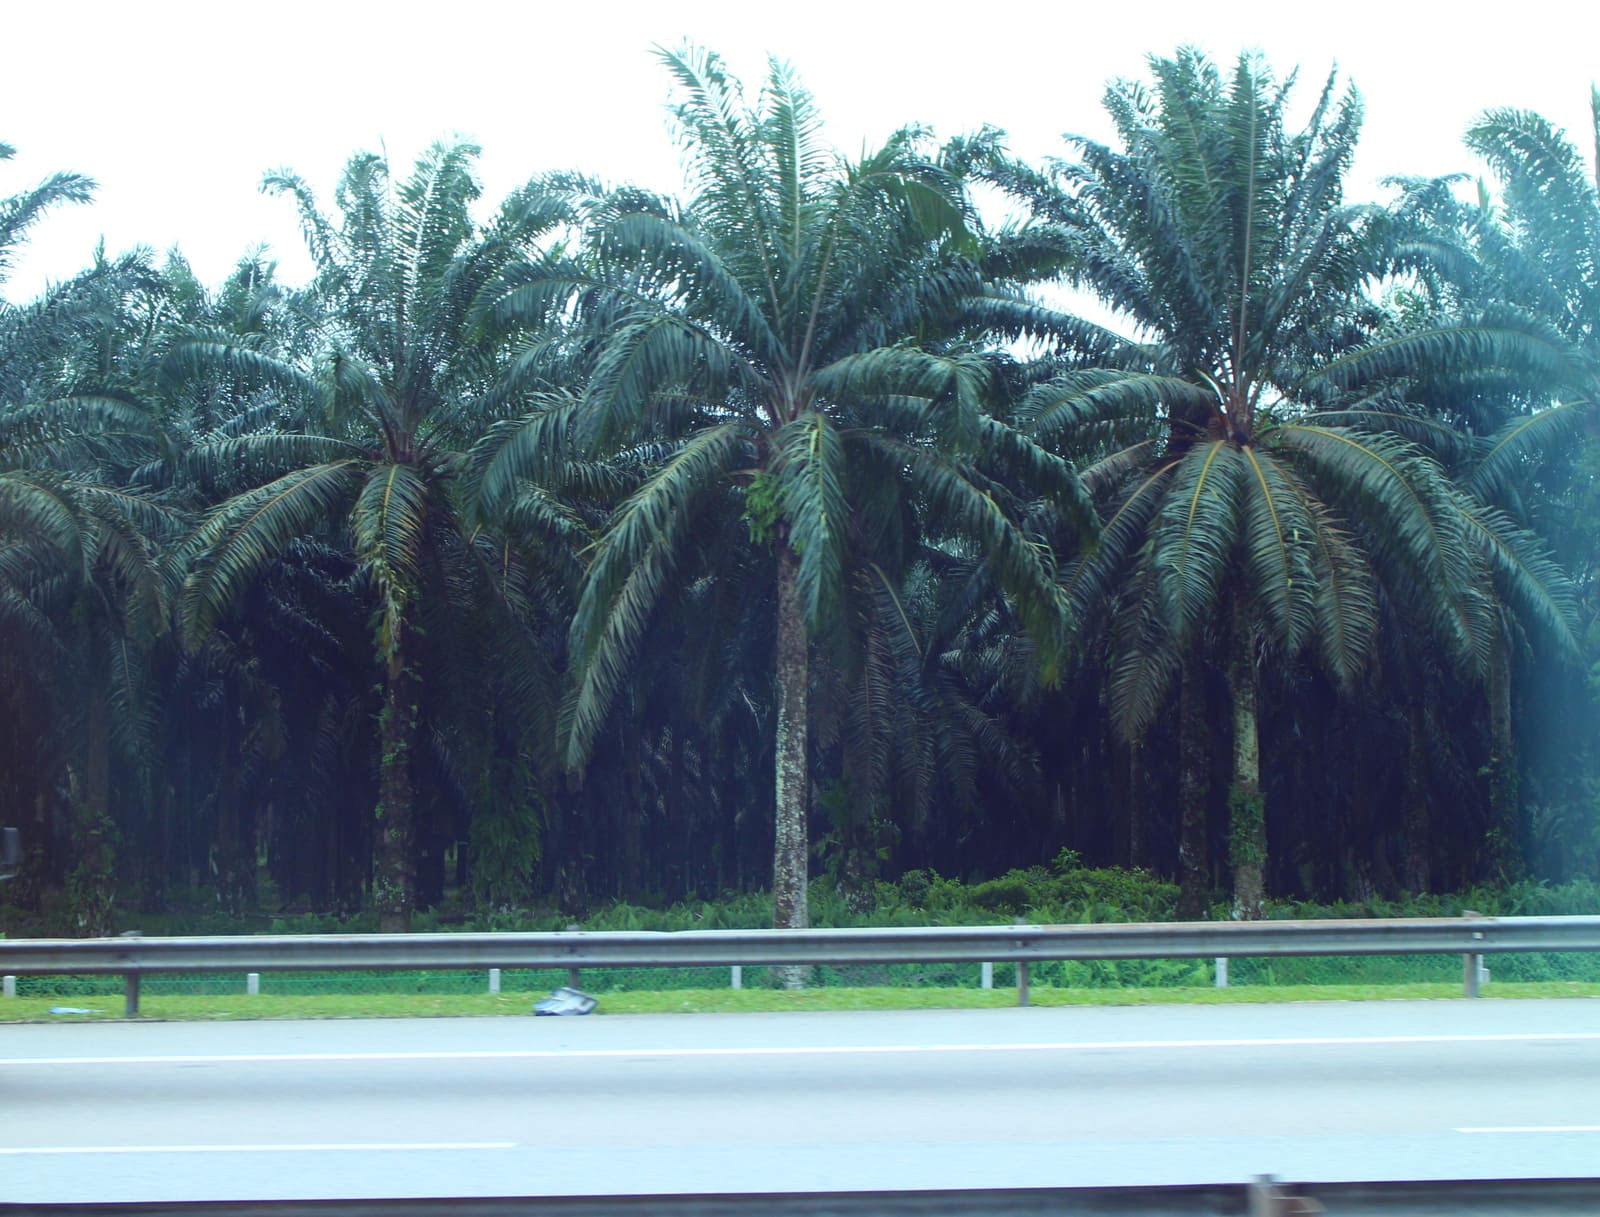 6/19中午告別新加坡前往馬來西亞新山高速公路上，兩旁看不到任何房屋，盡是棕櫚樹，馬來西亞以農立國